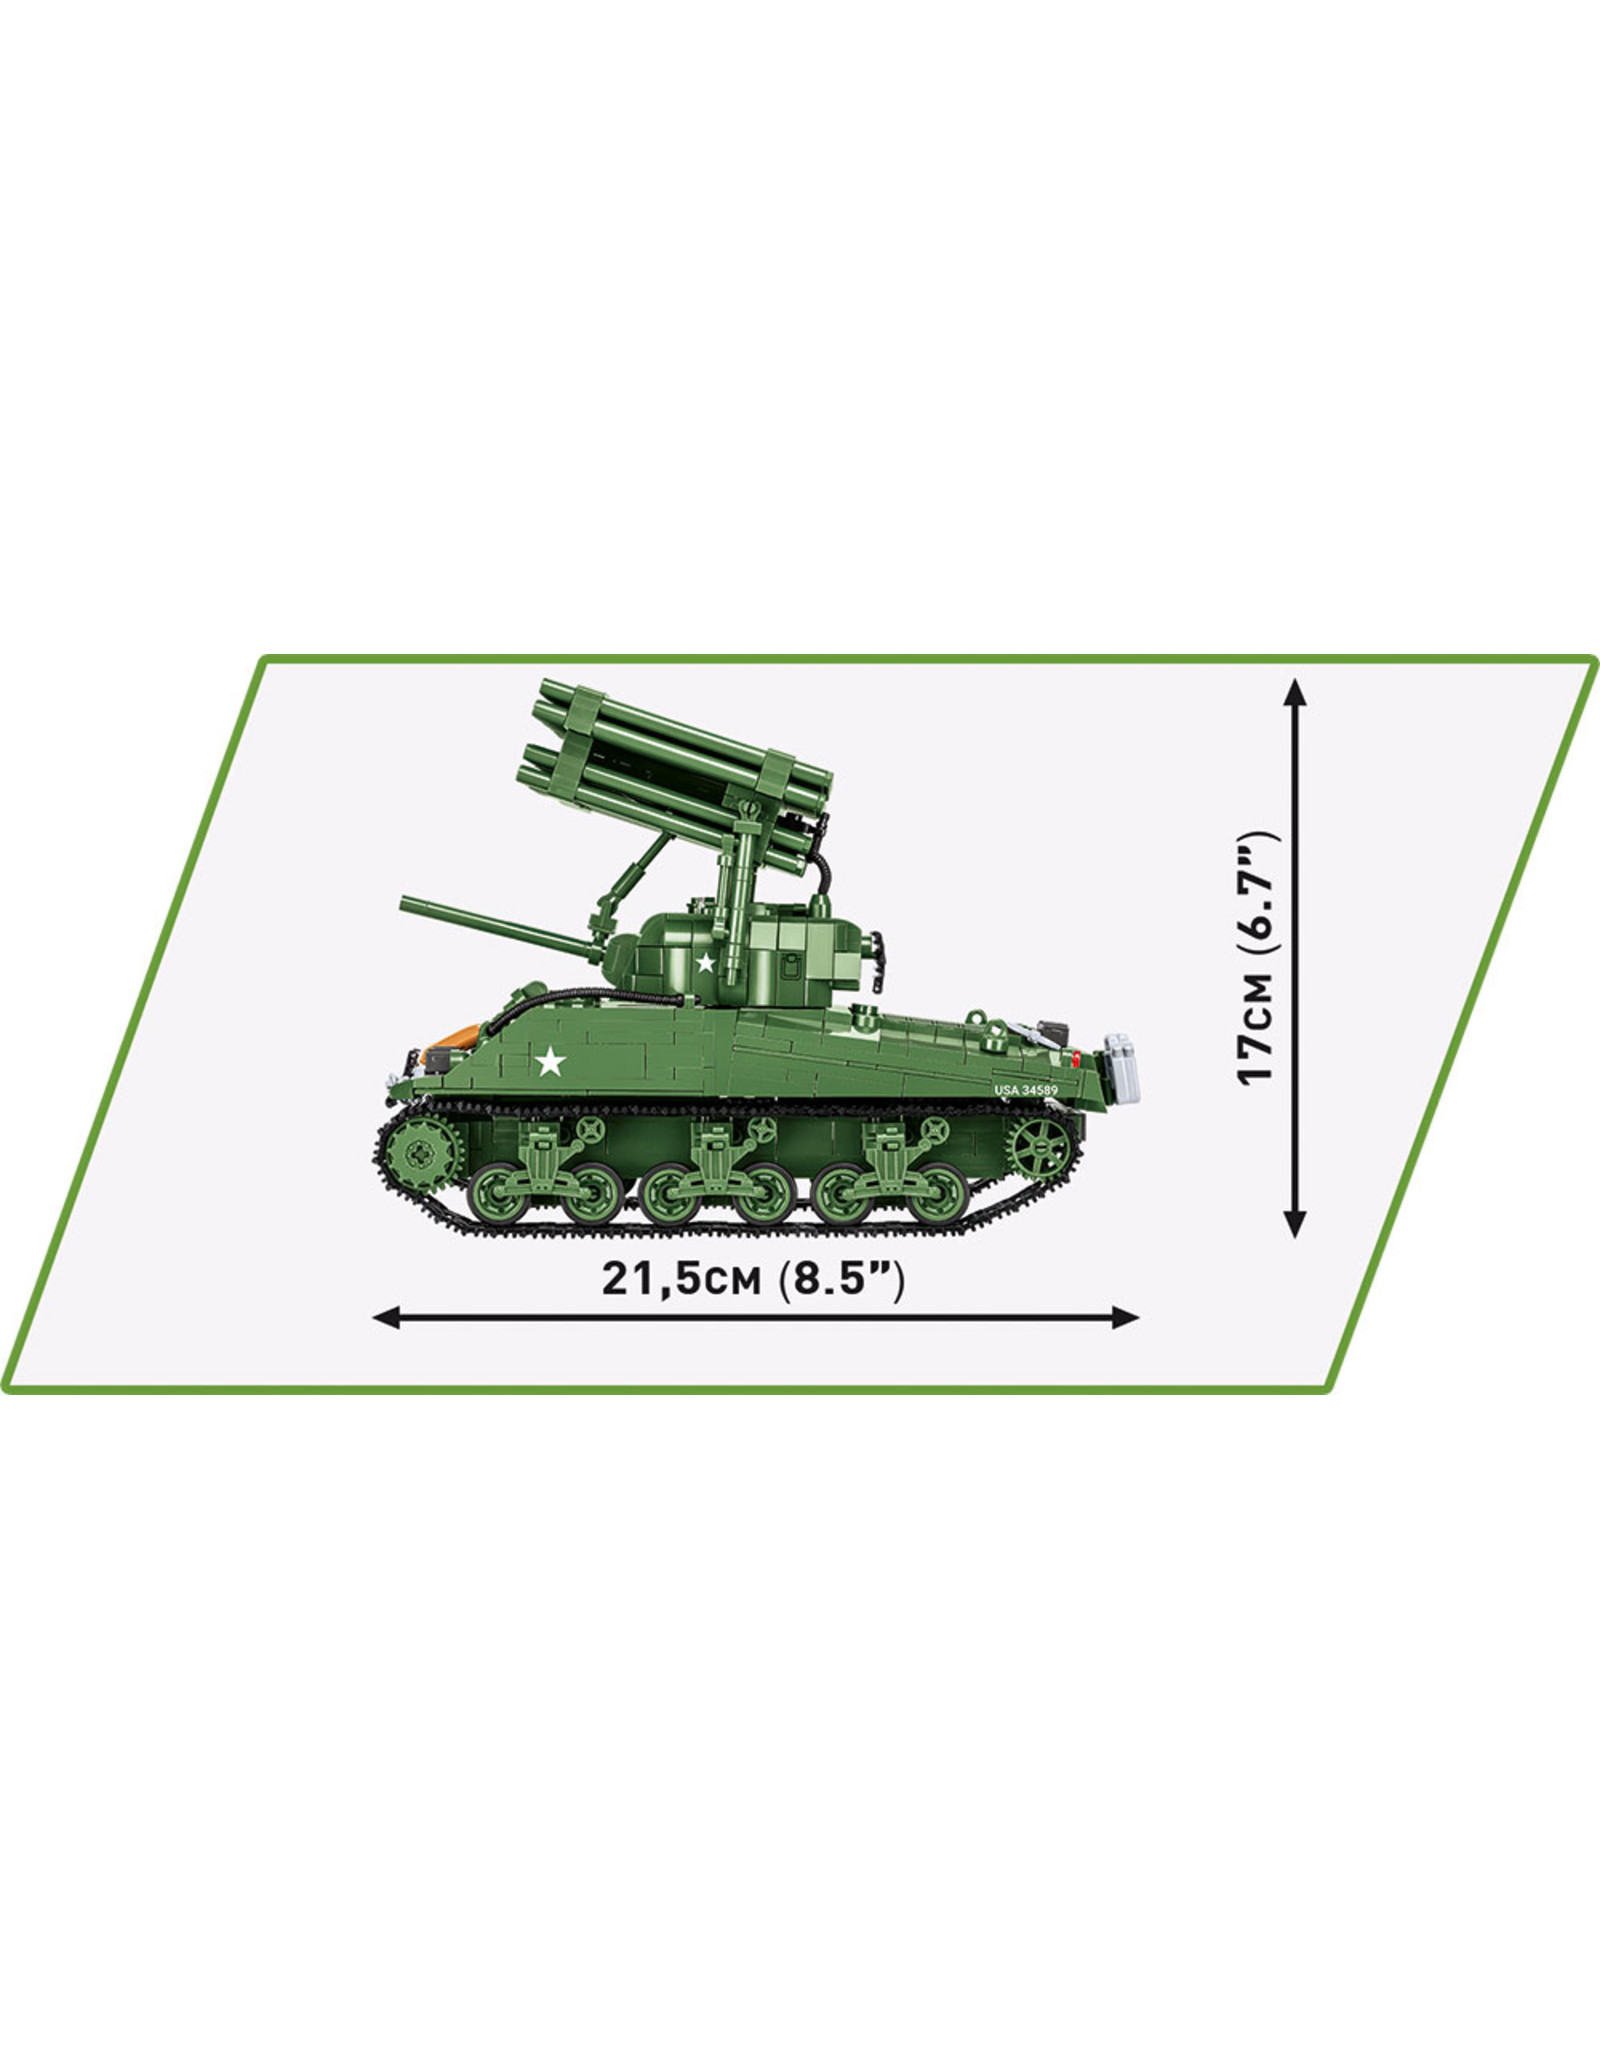 COBI COBI 2569 Sherman M4A3 T34Calliope